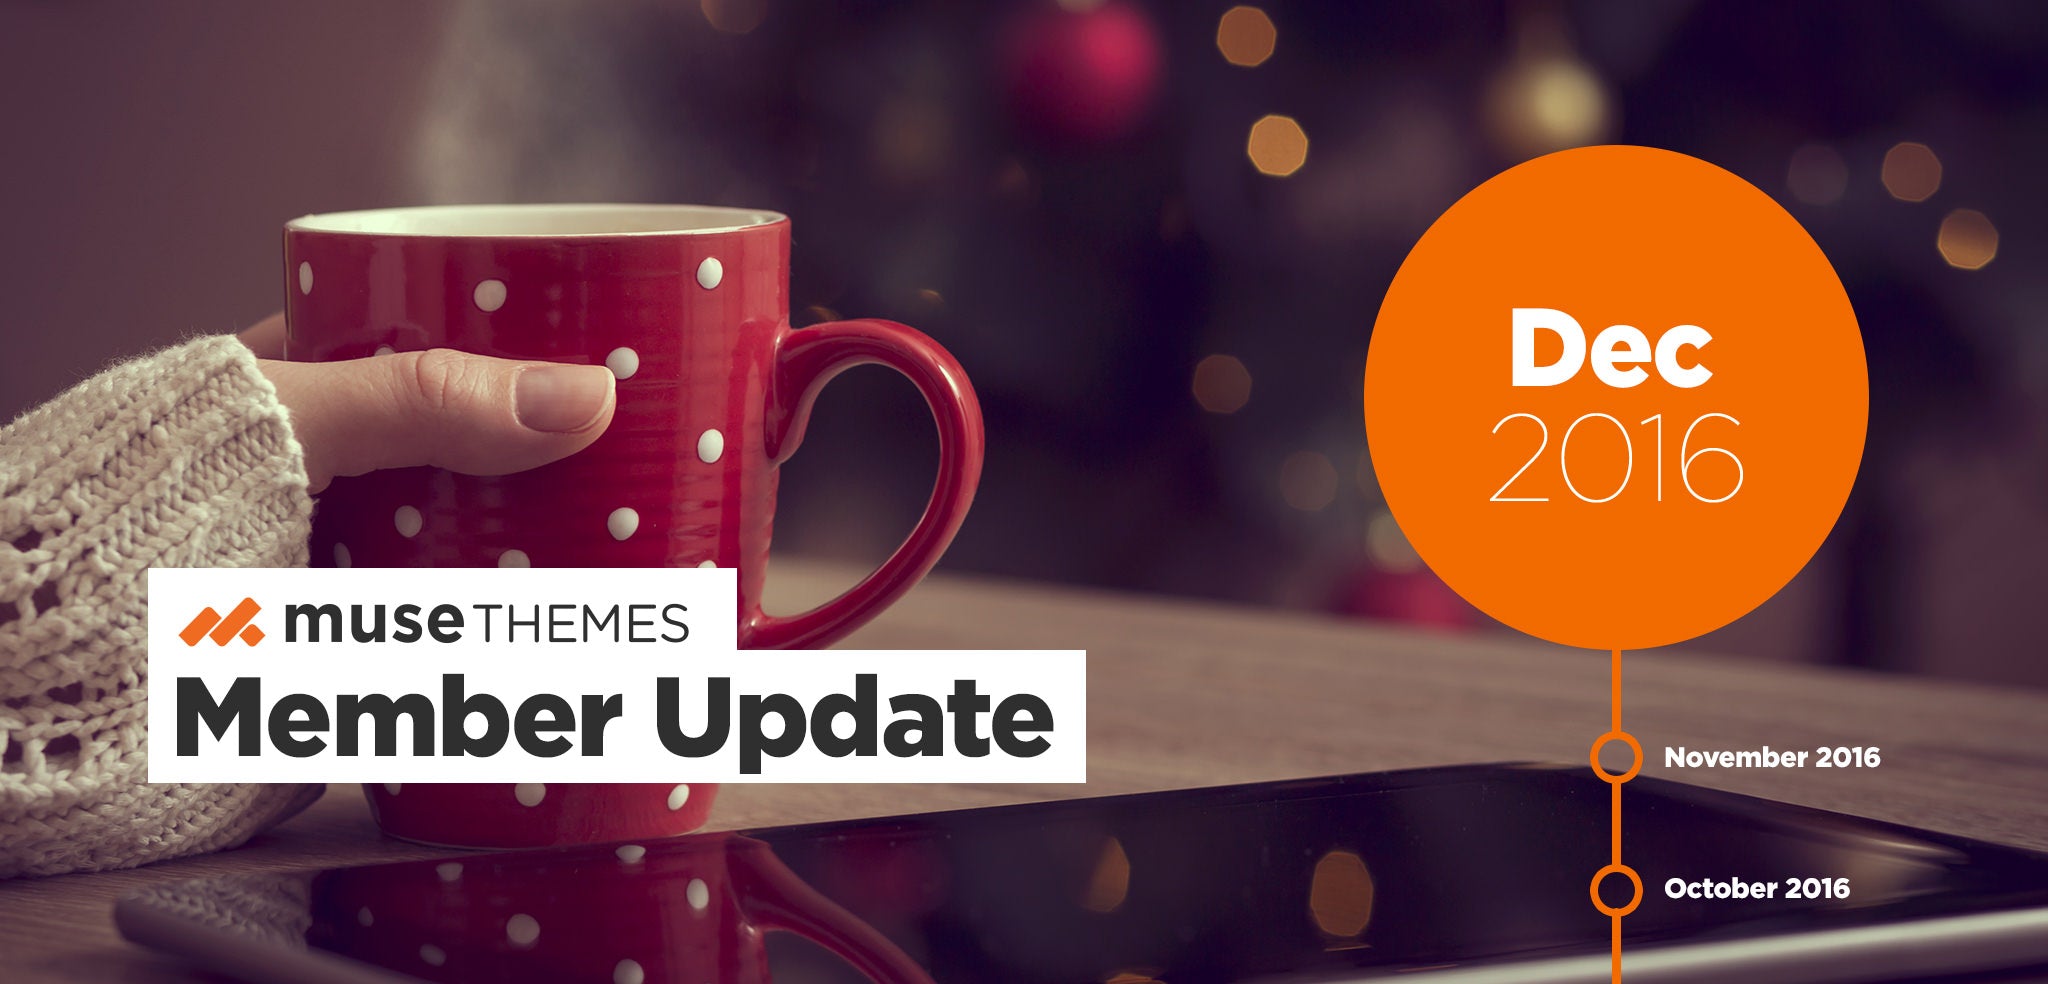 MuseThemes Member Update Dec 2016